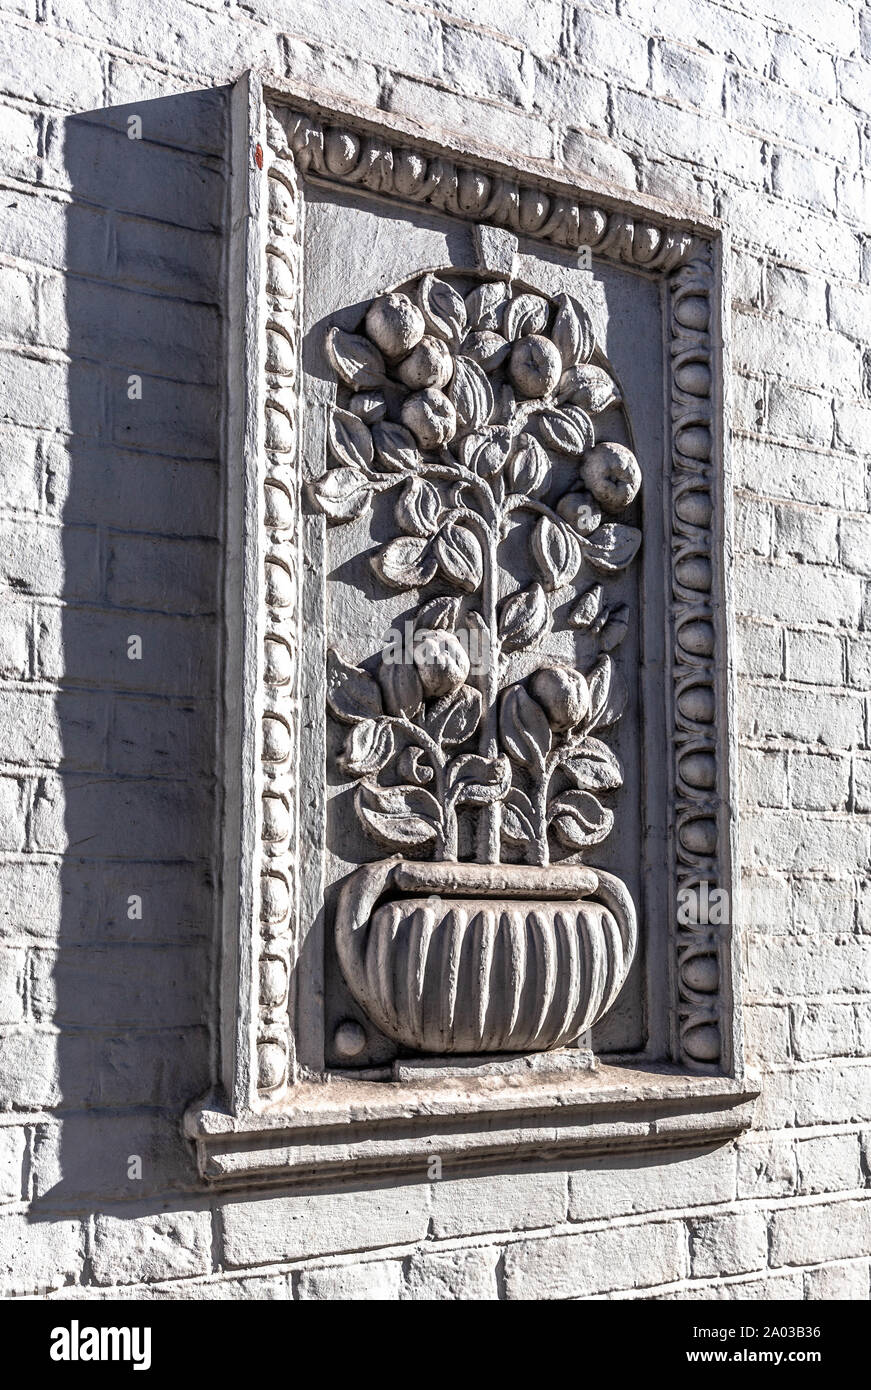 Un relief sculpture d'une plante en pot sur un mur de brique, Londres, Angleterre, Royaume-Uni. Banque D'Images